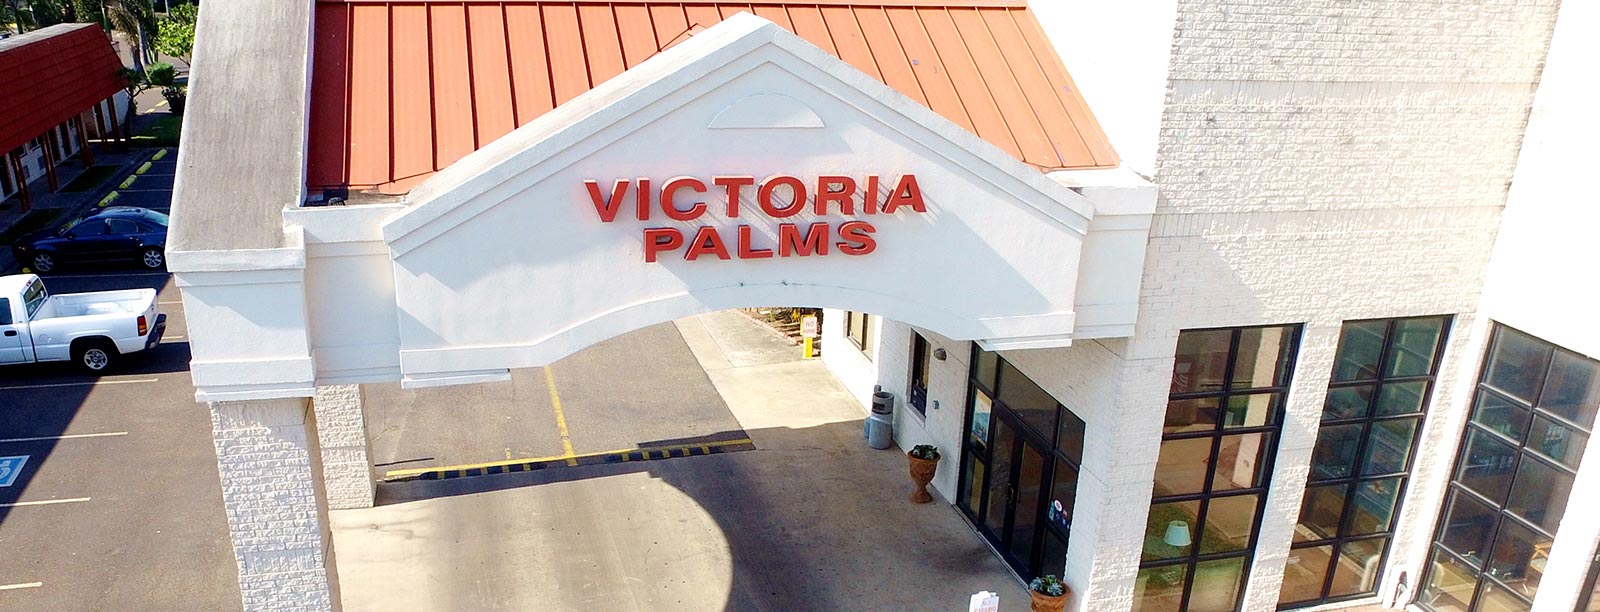 Victoria Palms Inn & Suites, Donna Services